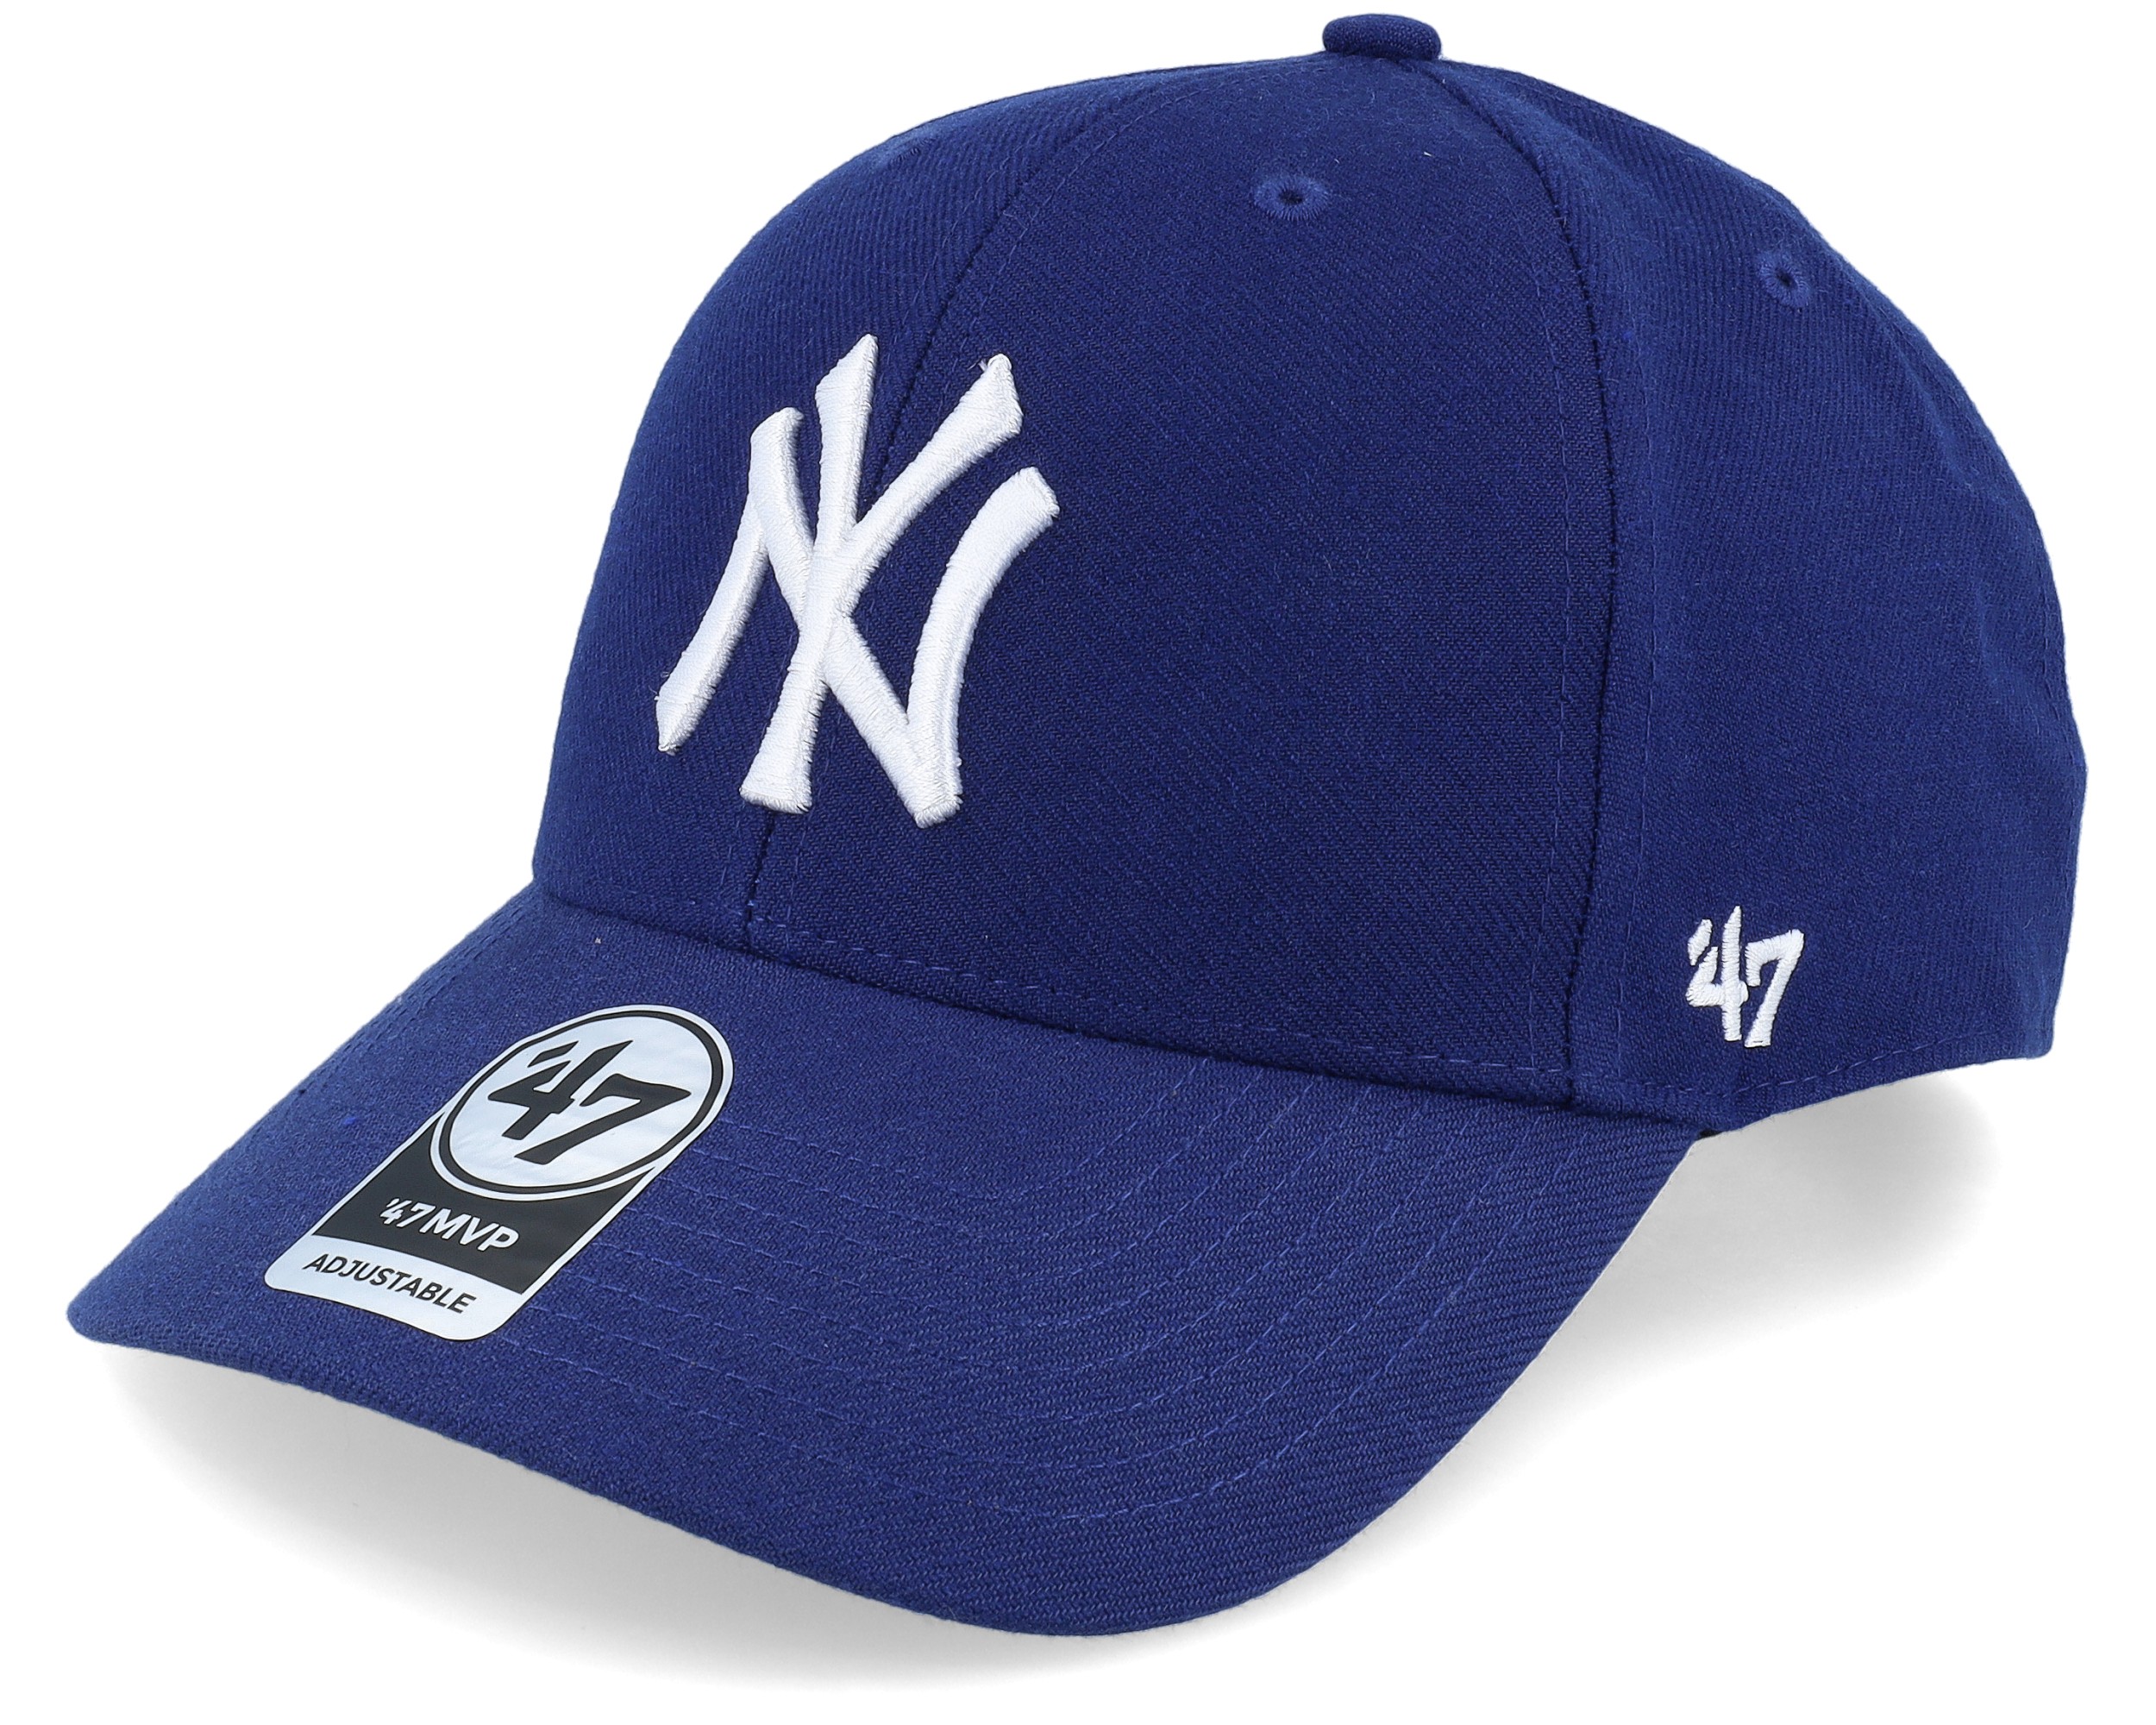 NY Blue Baseball Cap